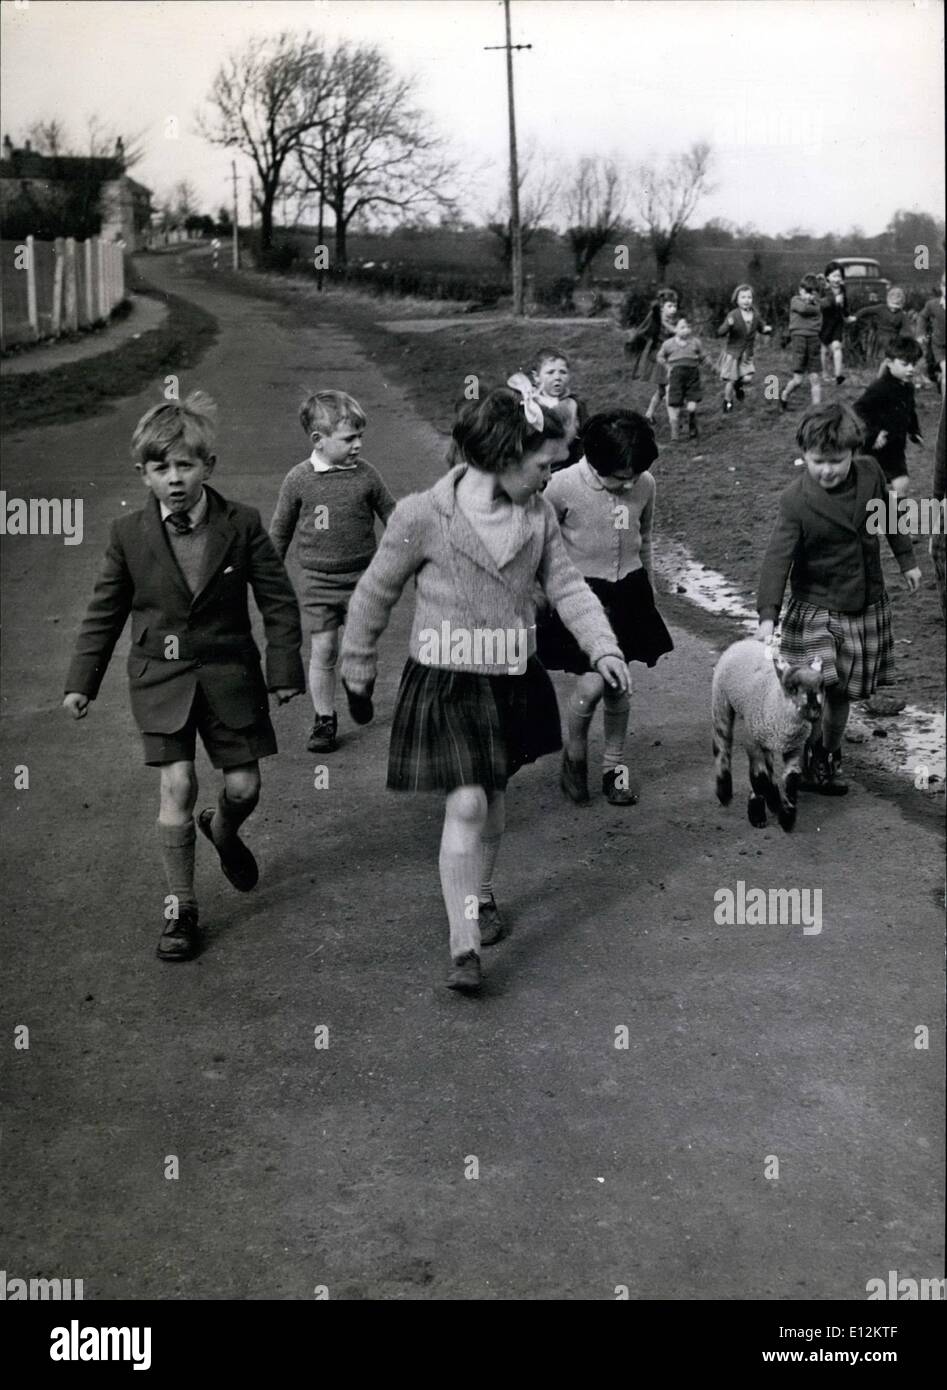 Febbraio 24, 2012 - Curly prende una passeggiata - con accompagnatore: i bambini come prendere Curly lungo la corsia con le loro Bacher. Presto saranno svezzare lui dalla bottiglia a erba. Foto Stock